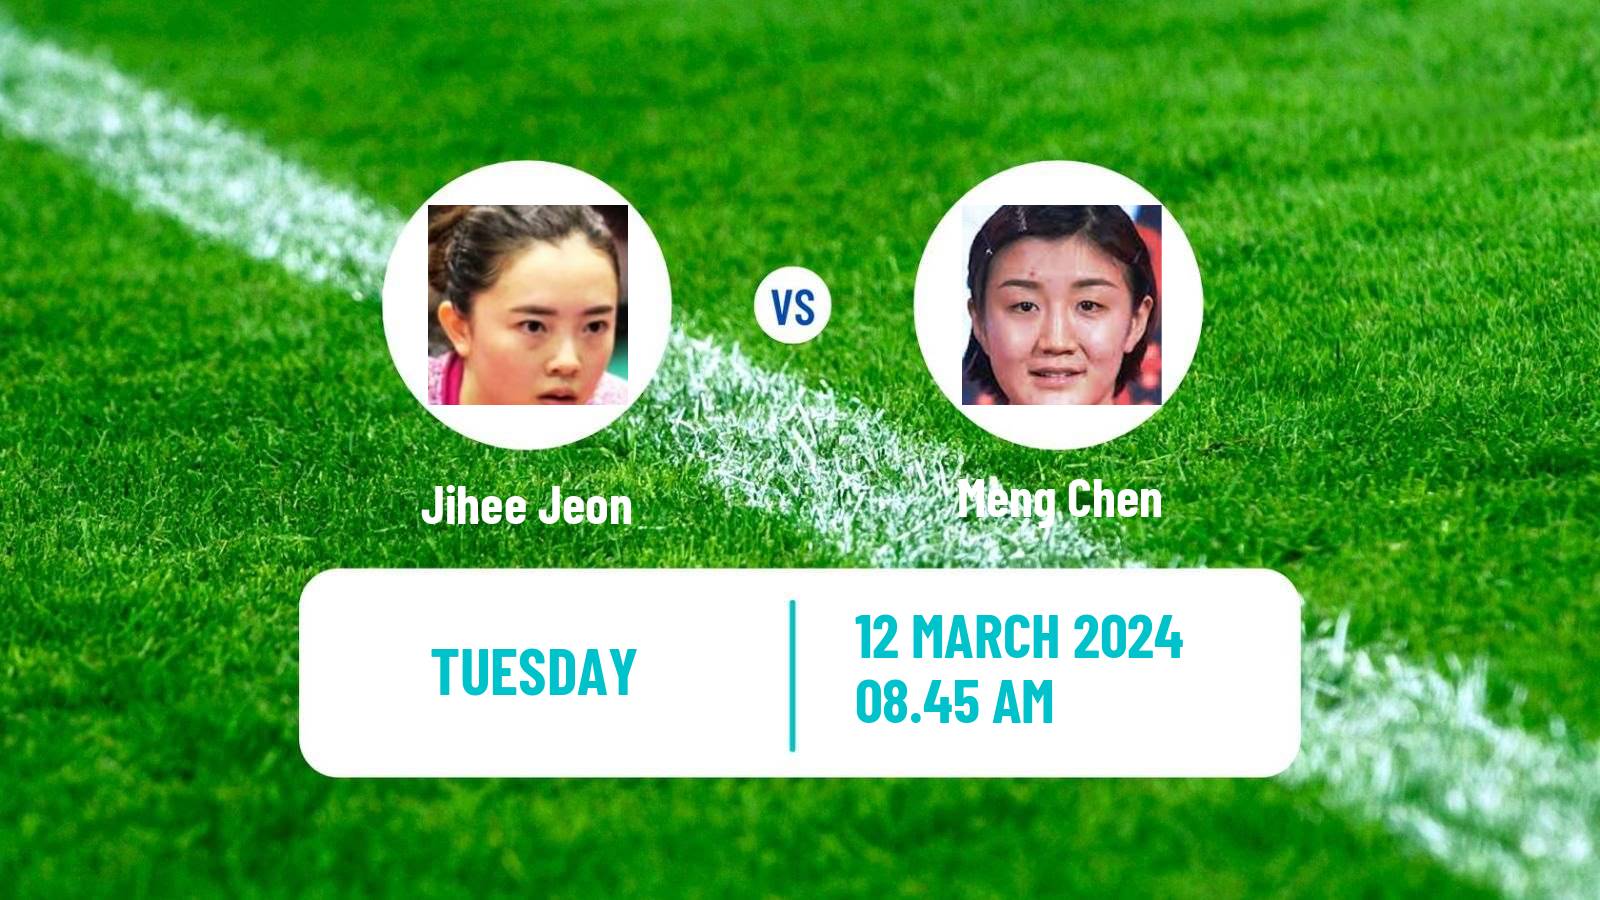 Table tennis Singapore Smash Women Jihee Jeon - Meng Chen